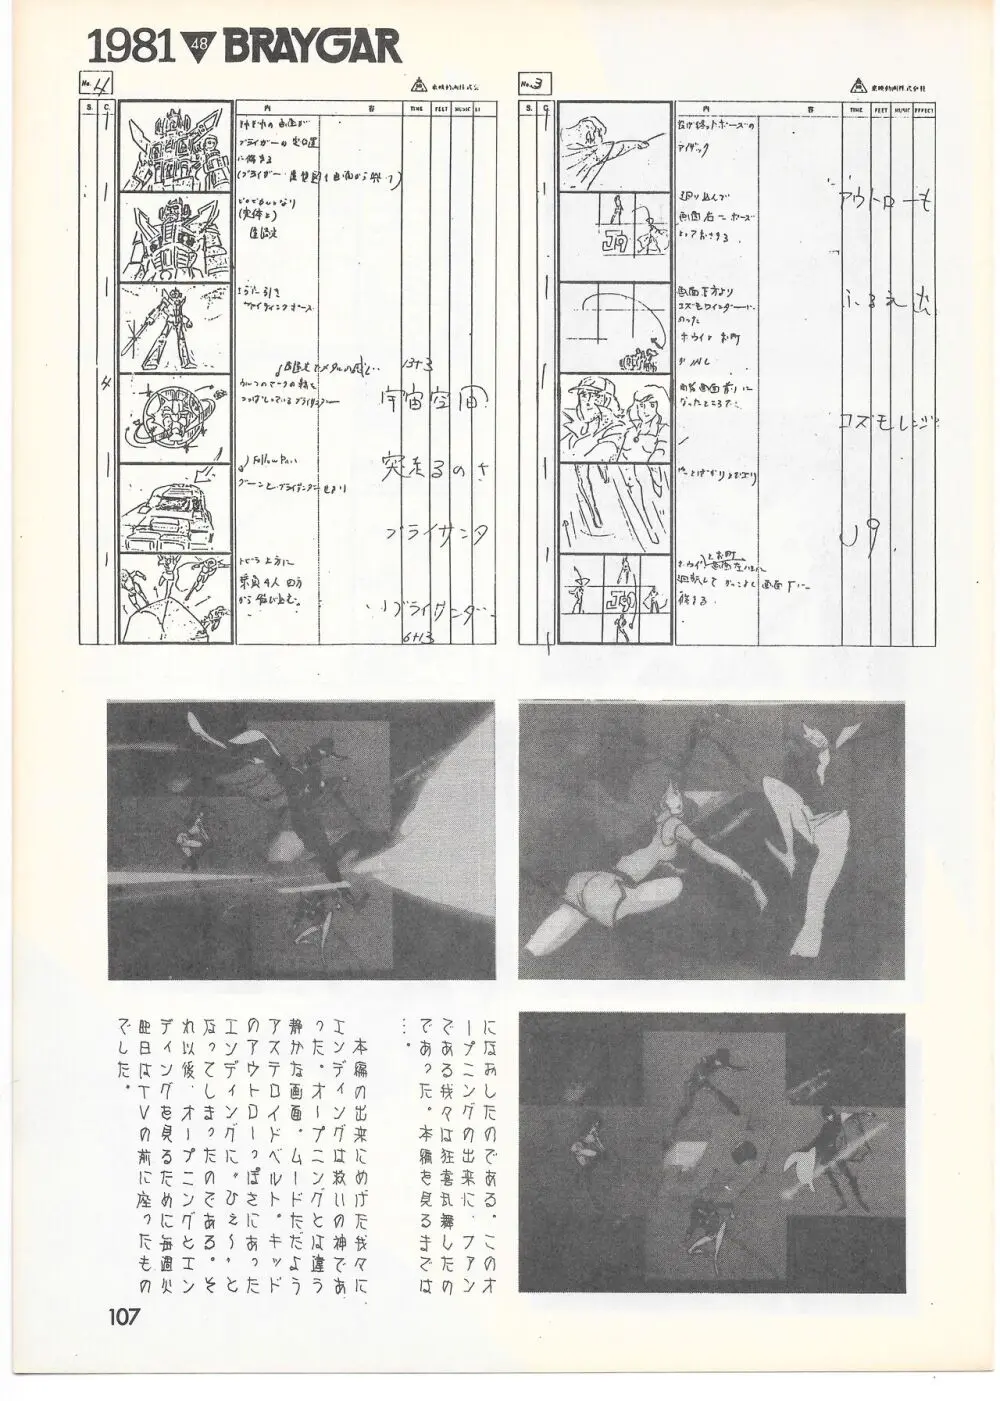 THE ANIMATOR 1 金田伊功特集号 102ページ